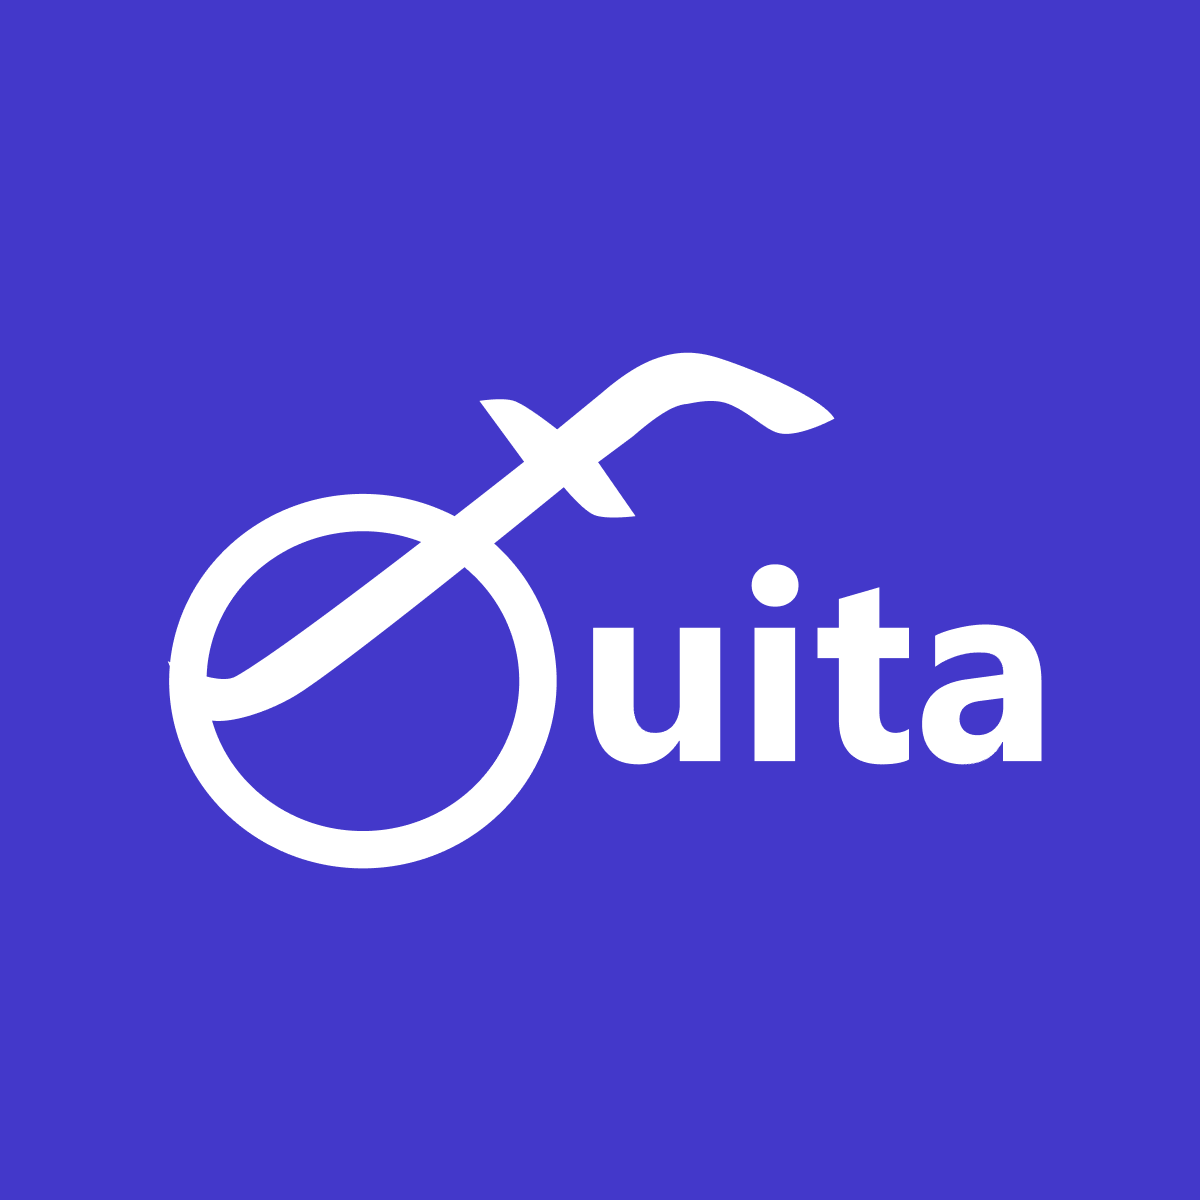 Fouita logo